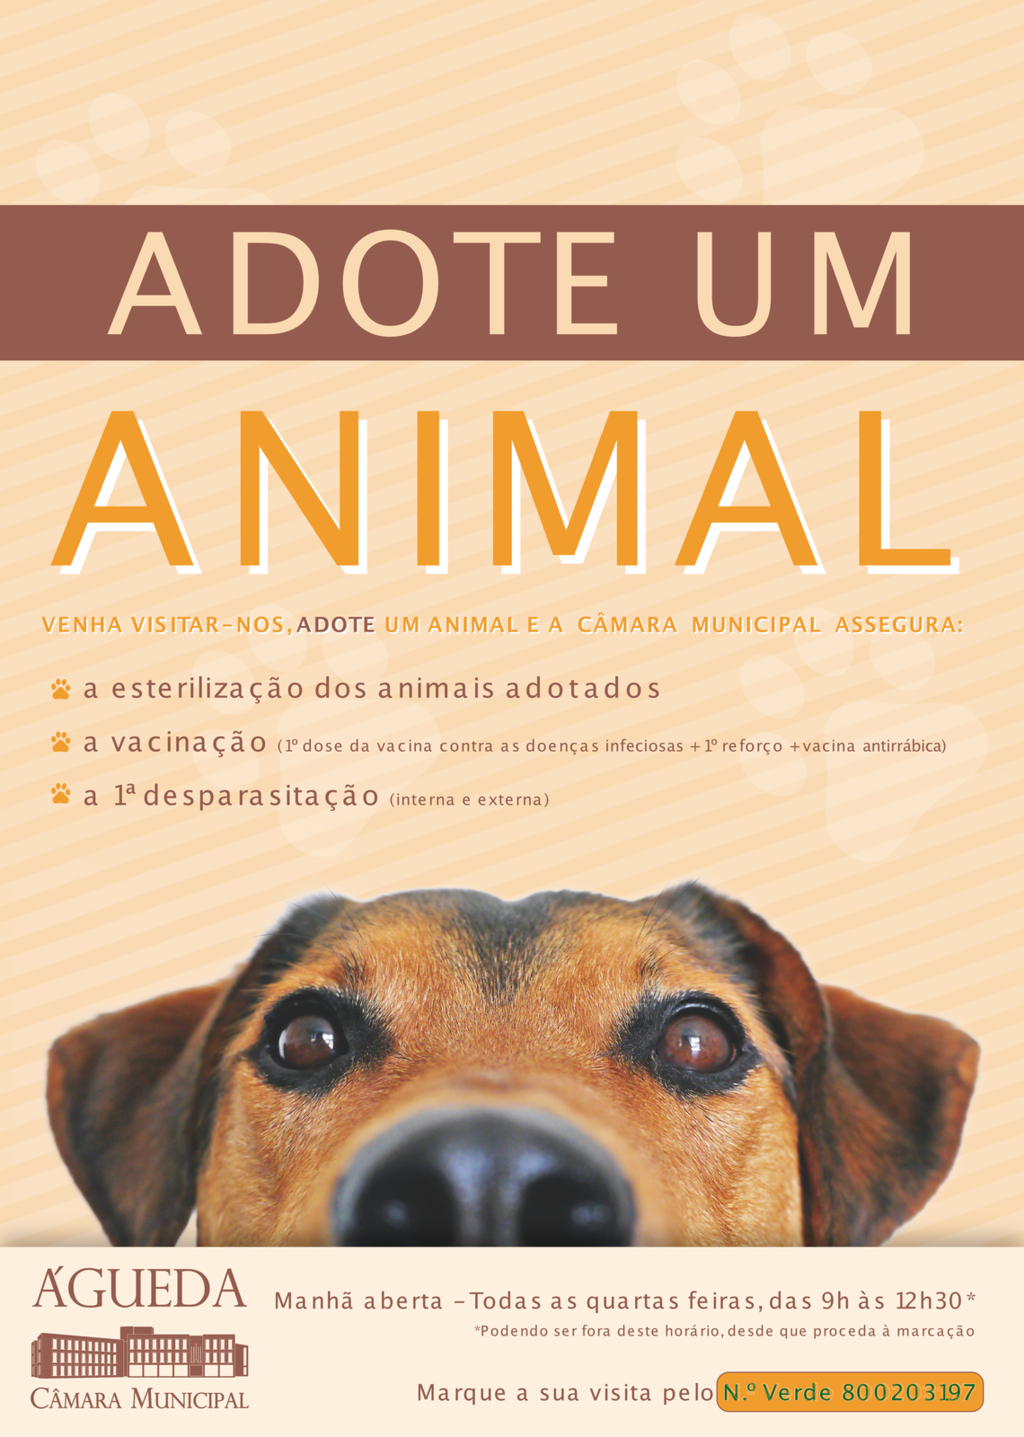  Campanha “Adote um Animal Abandonado”